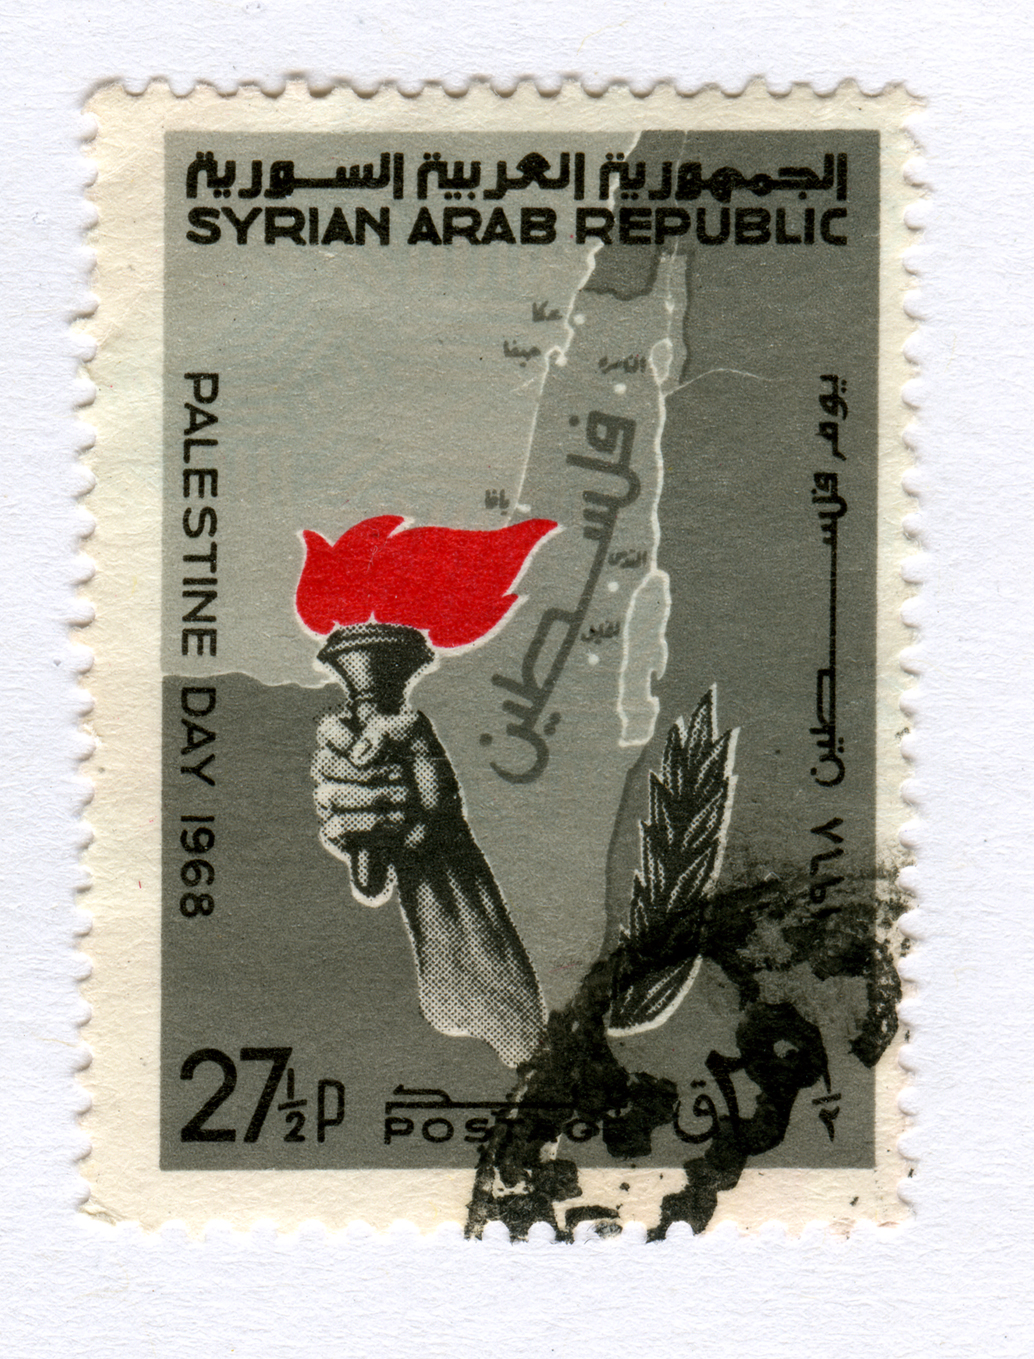 Syrian Arab Republic stamp